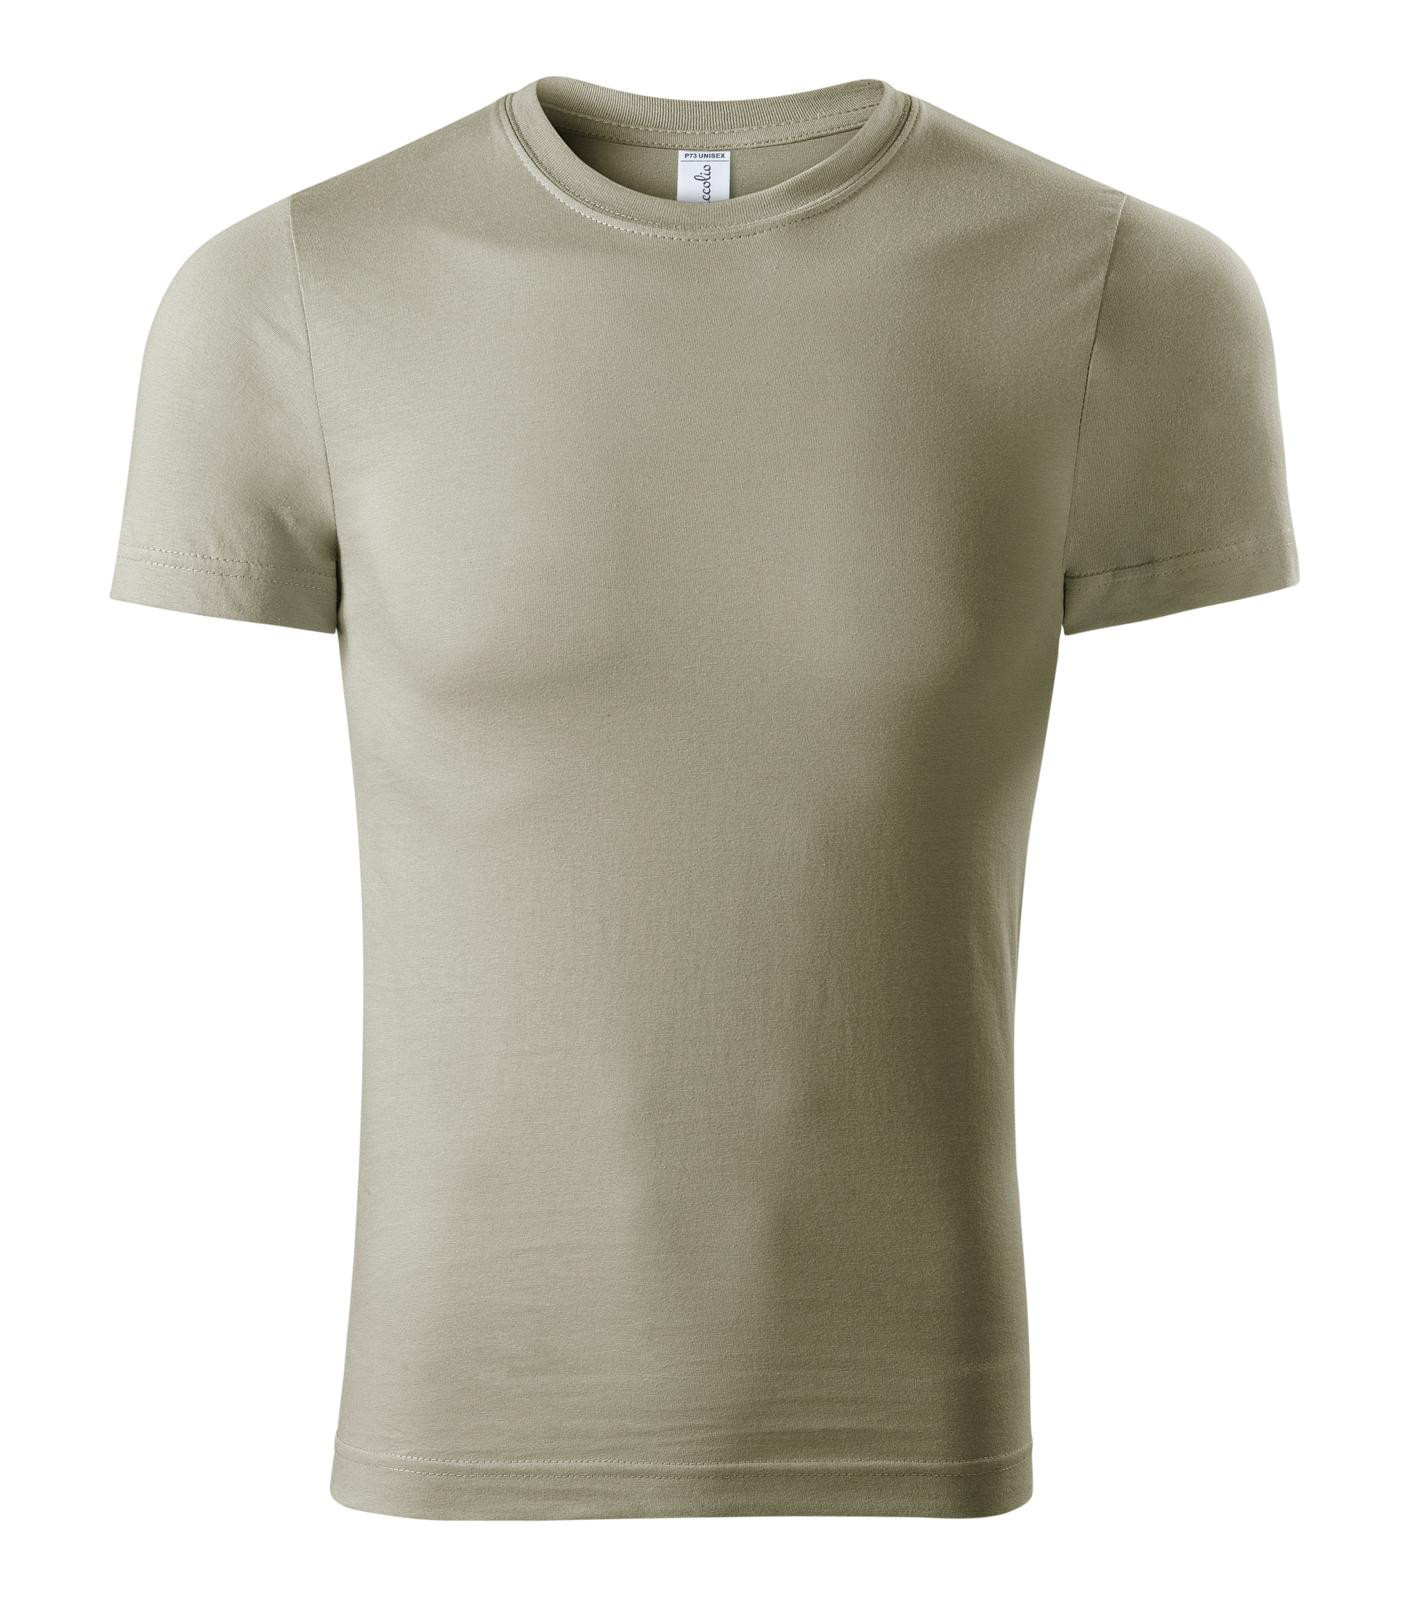 Unisex tričko Piccolio Paint P73 - veľkosť: L, farba: khaki svetlá